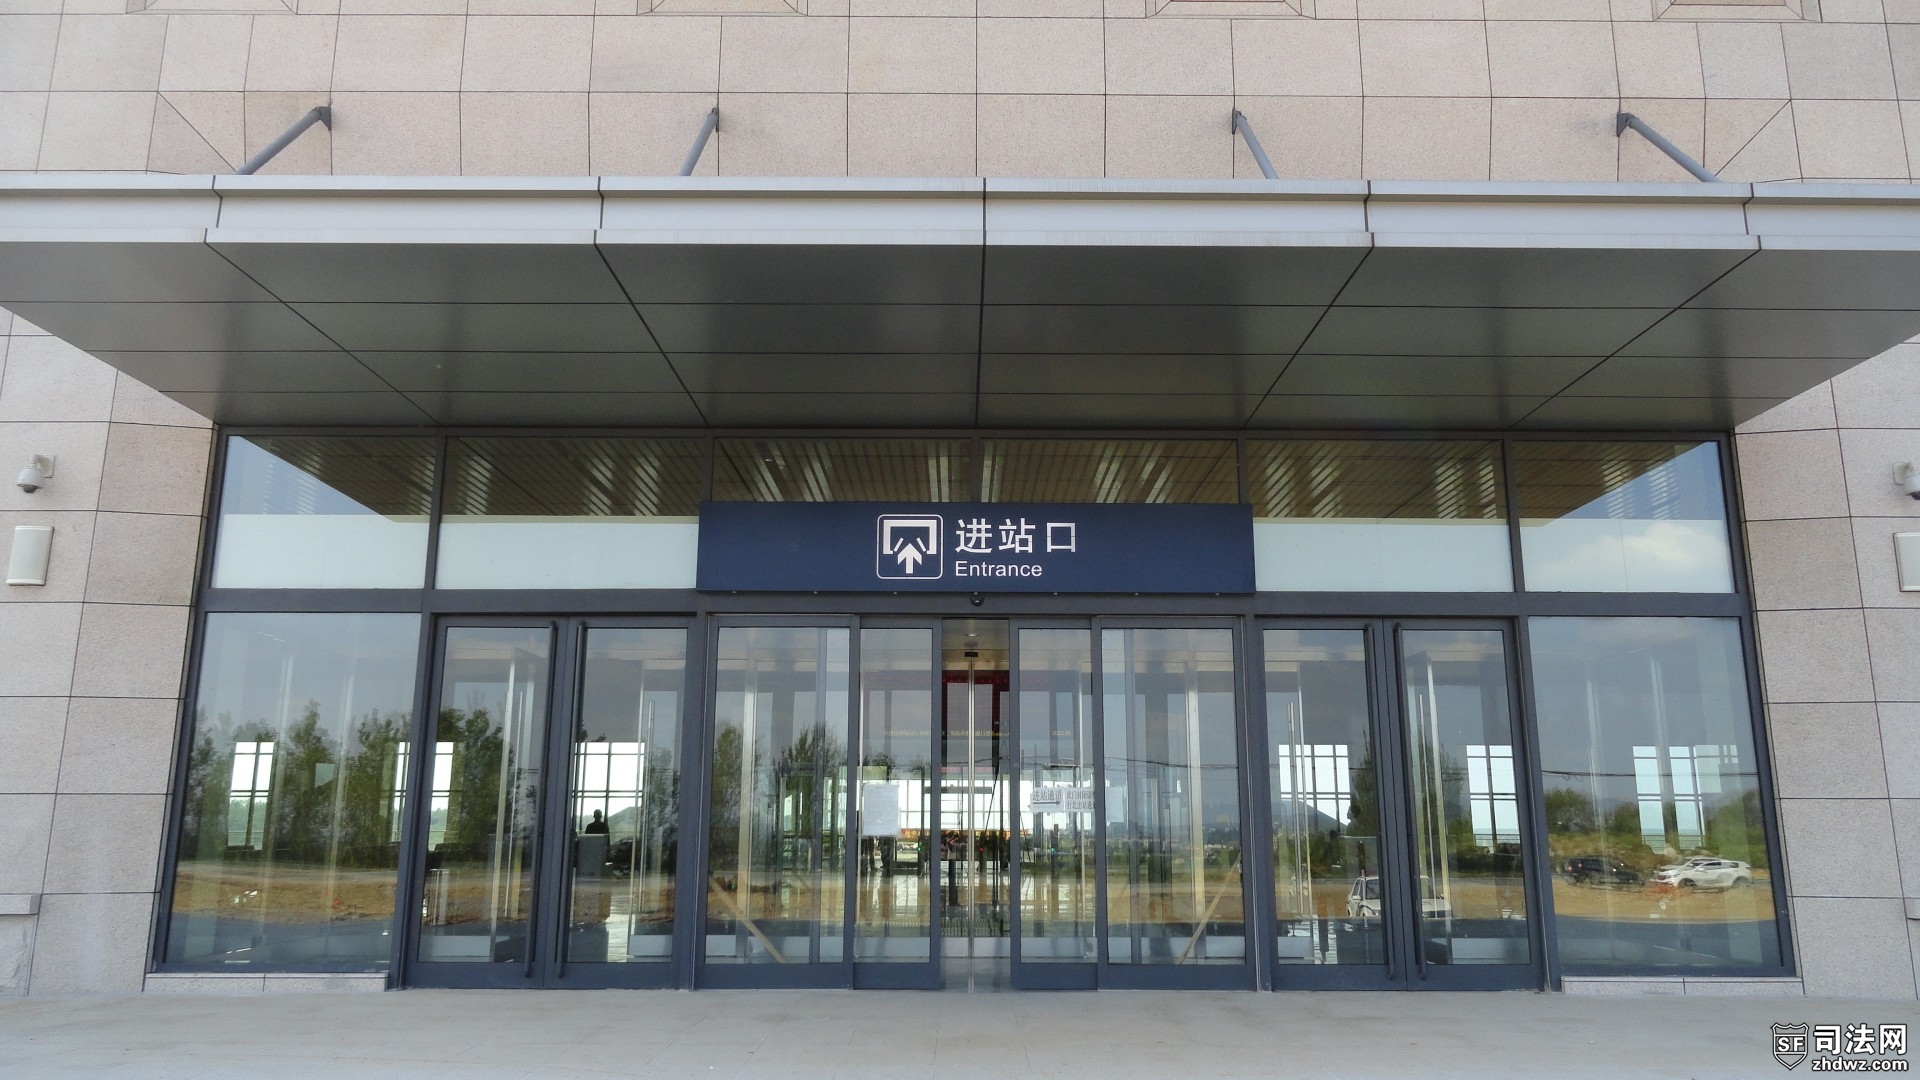 7、高速铁路-昌图西站外景-候车室大门（进站口）.JPG